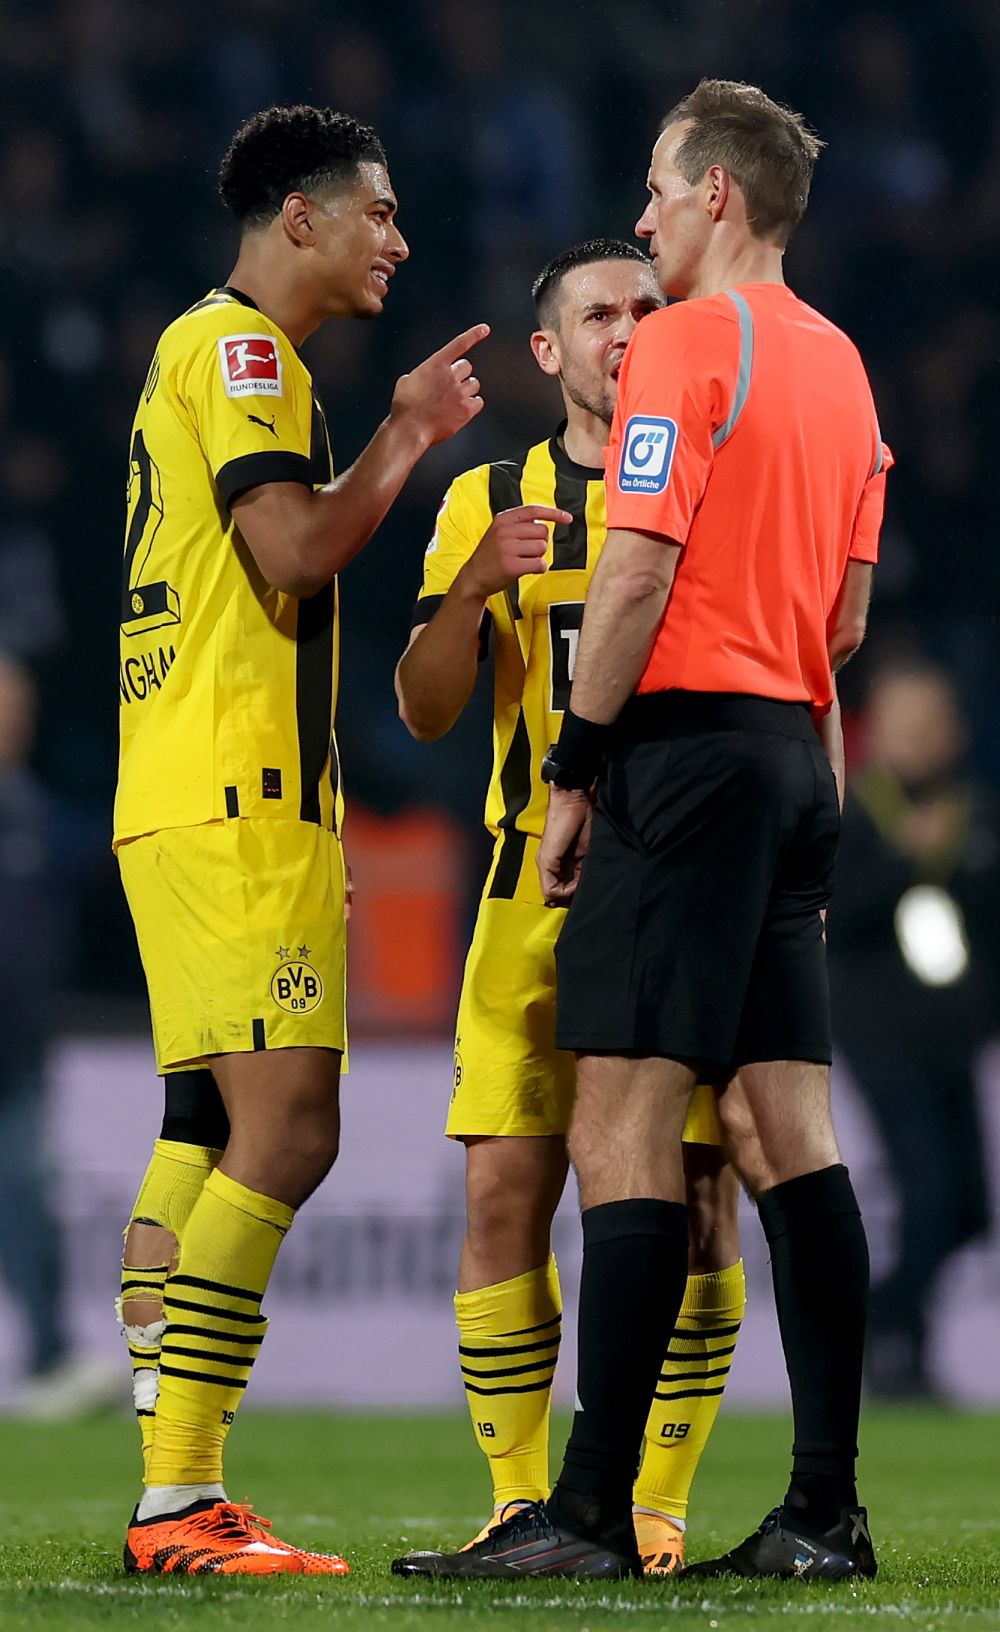 Arbitrul care și-a recunoscut greșeala din meciul lui Dortmund a ajuns sub protecția poliției. Detalii incredibile_5